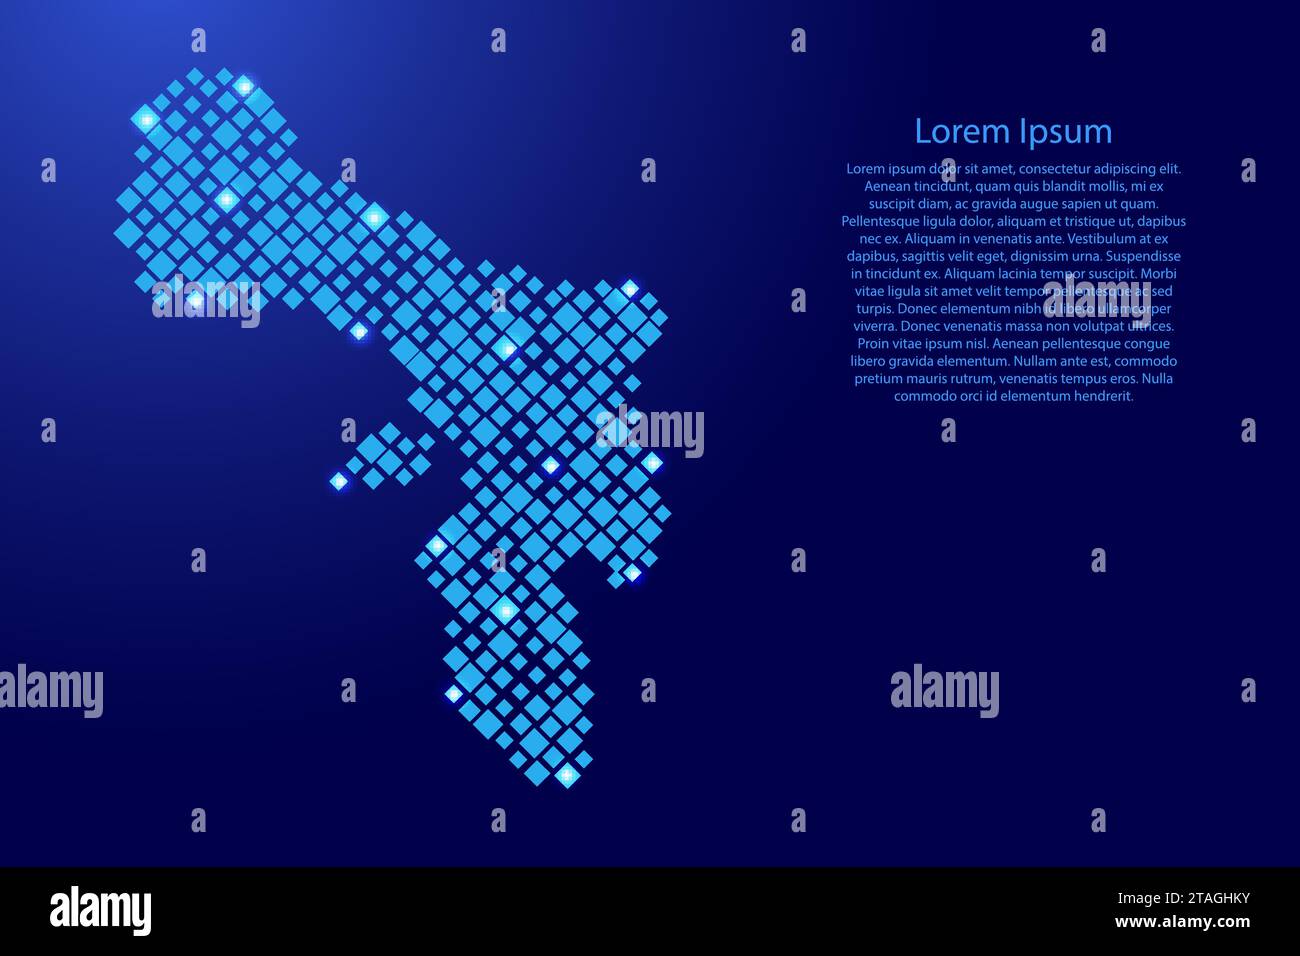 Carte Bonaire à partir de losanges bleus de différentes tailles et grille d'étoiles spatiales brillantes. Illustration vectorielle. Illustration de Vecteur